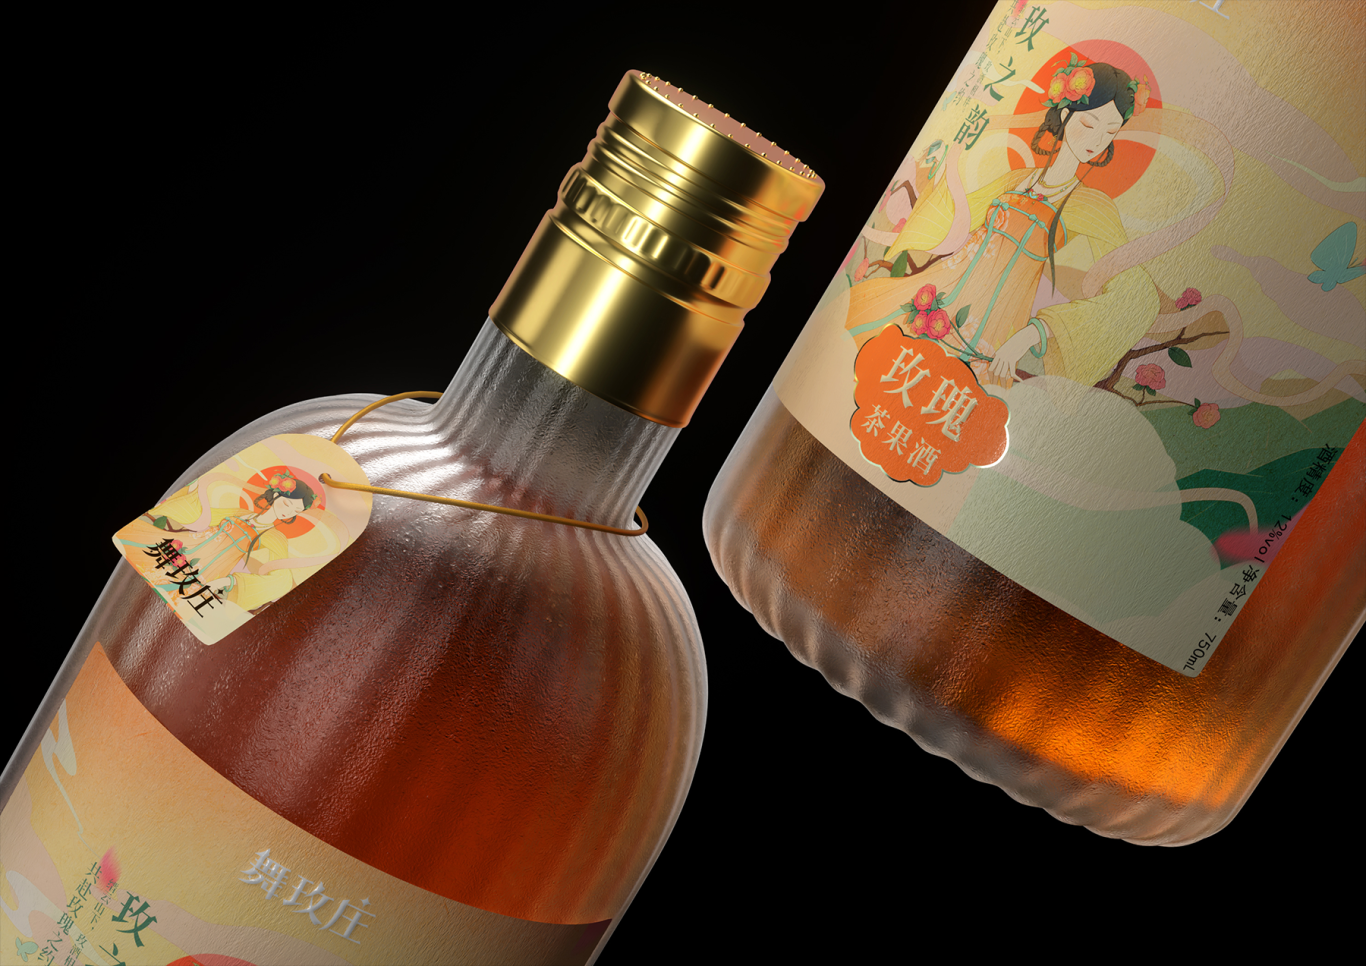 舞玫庄-果酒系列产品包装设计图9